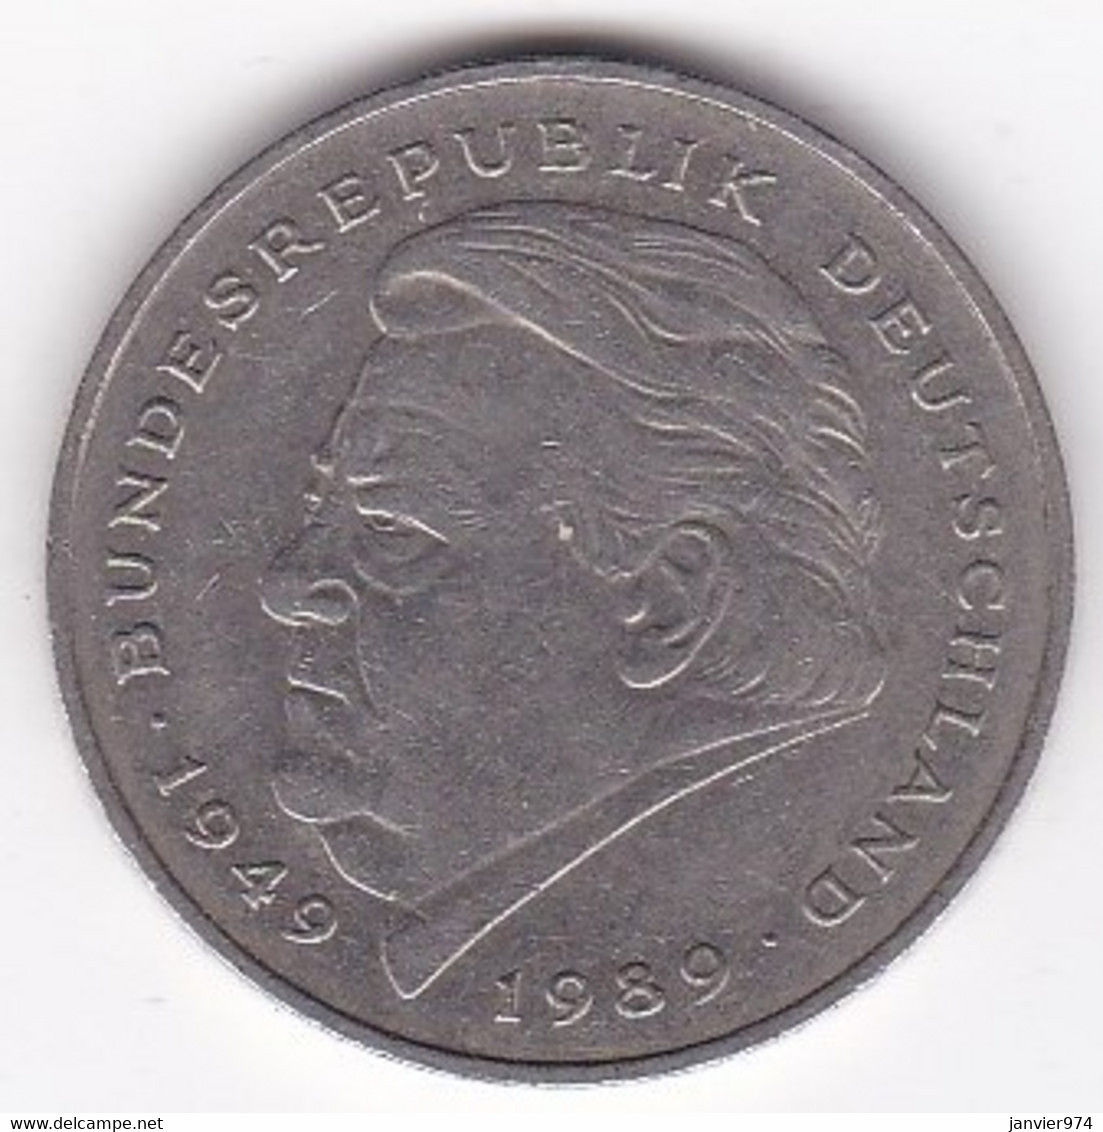 2 Deutsche Mark 1990 D Munich, Franz Josef Strauss ,KM# 175 - 2 Marcos